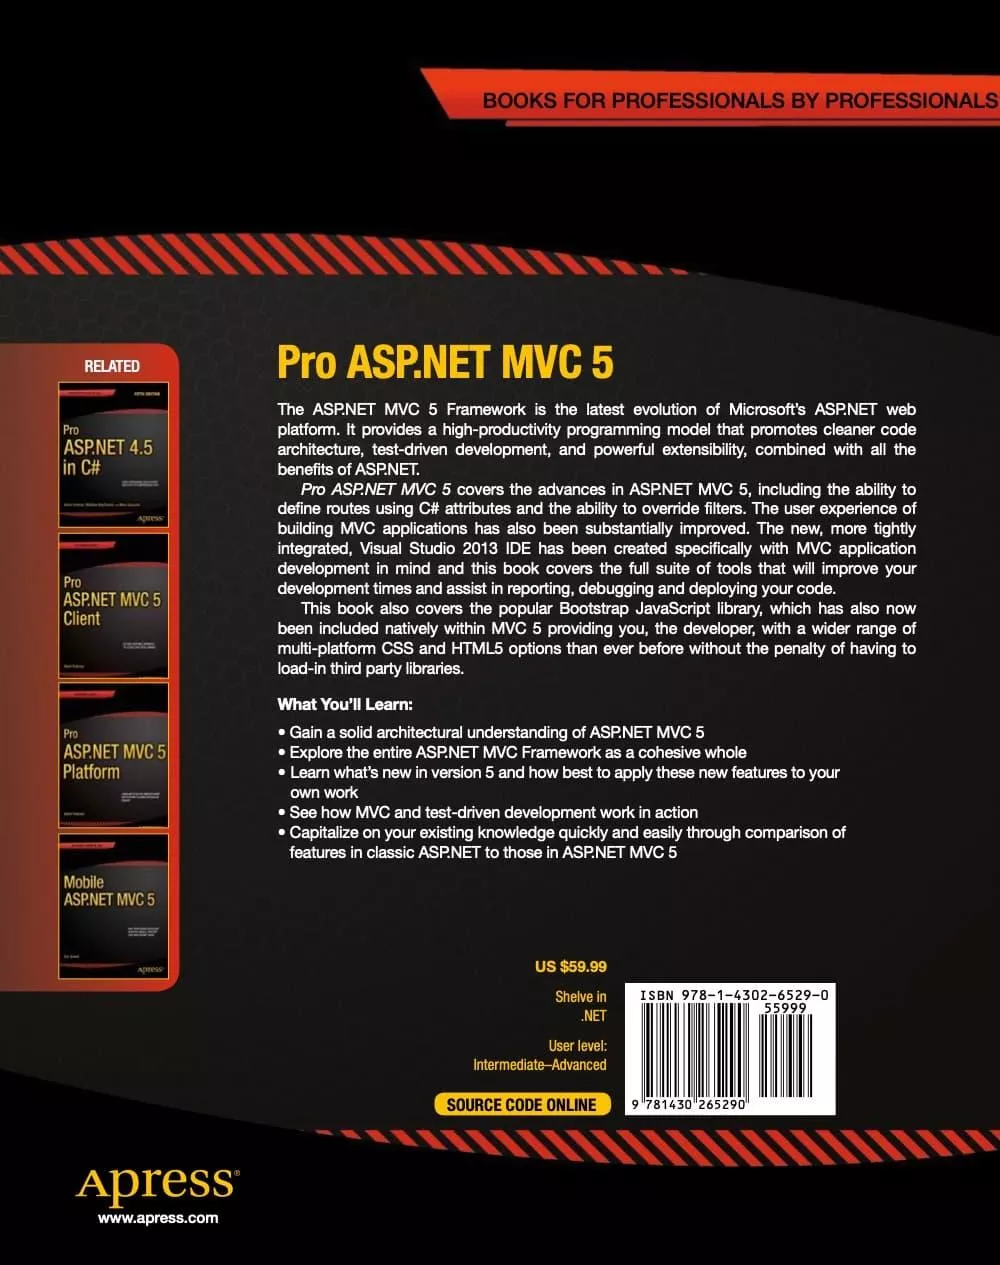 Pro ASP.NET MVC 5